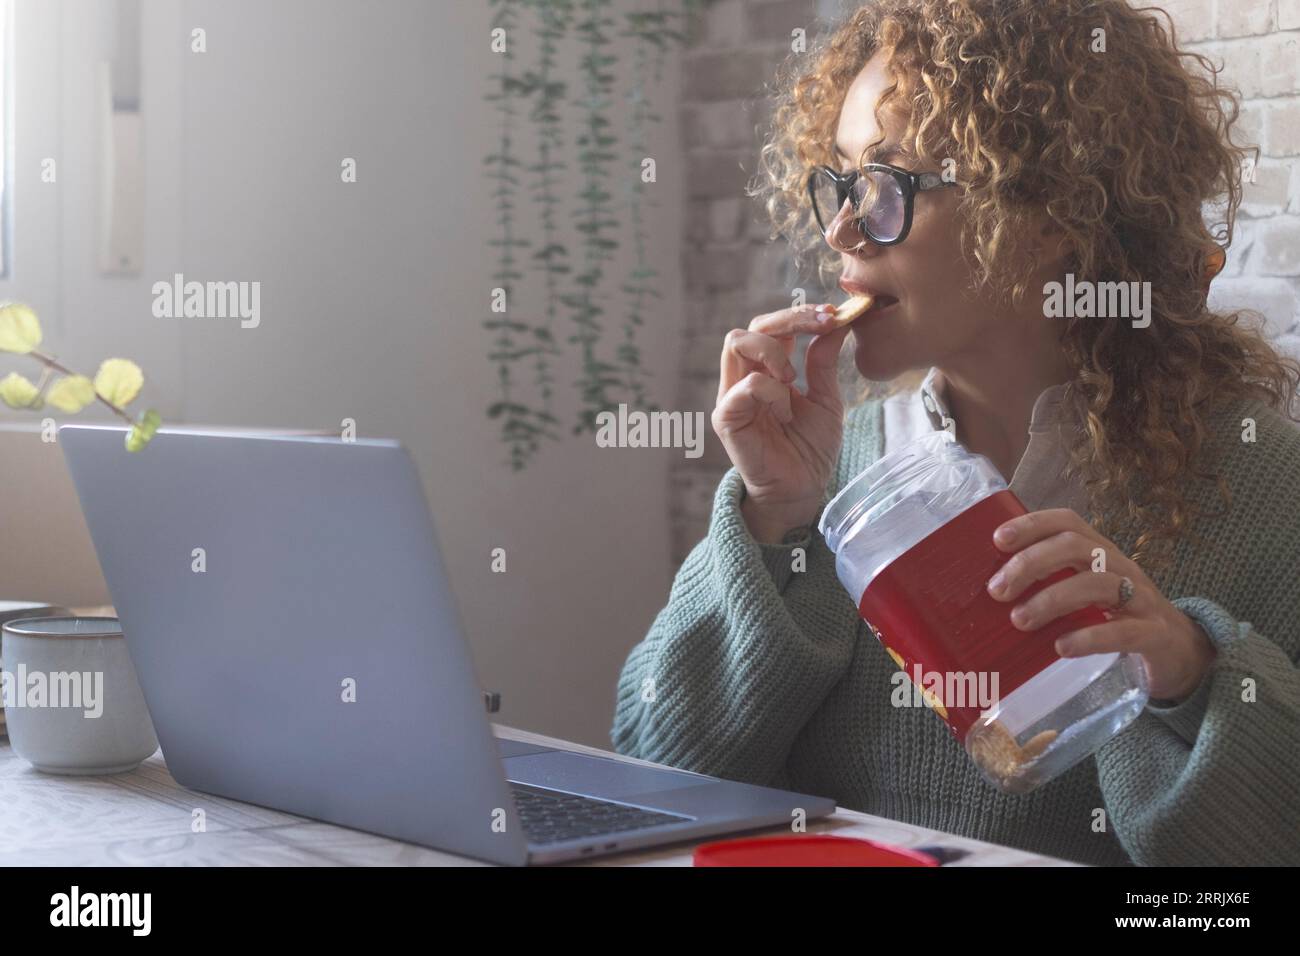 Eine Frau, die einen Laptop auf dem Tisch benutzt und Kekse aus der Box isst. Menschen, die Müll essen und gleichzeitig arbeiten. Beschäftigte Person, die während des Frühstücks oder der Pause am Computer arbeitet. Moderner Lebensstil Stockfoto